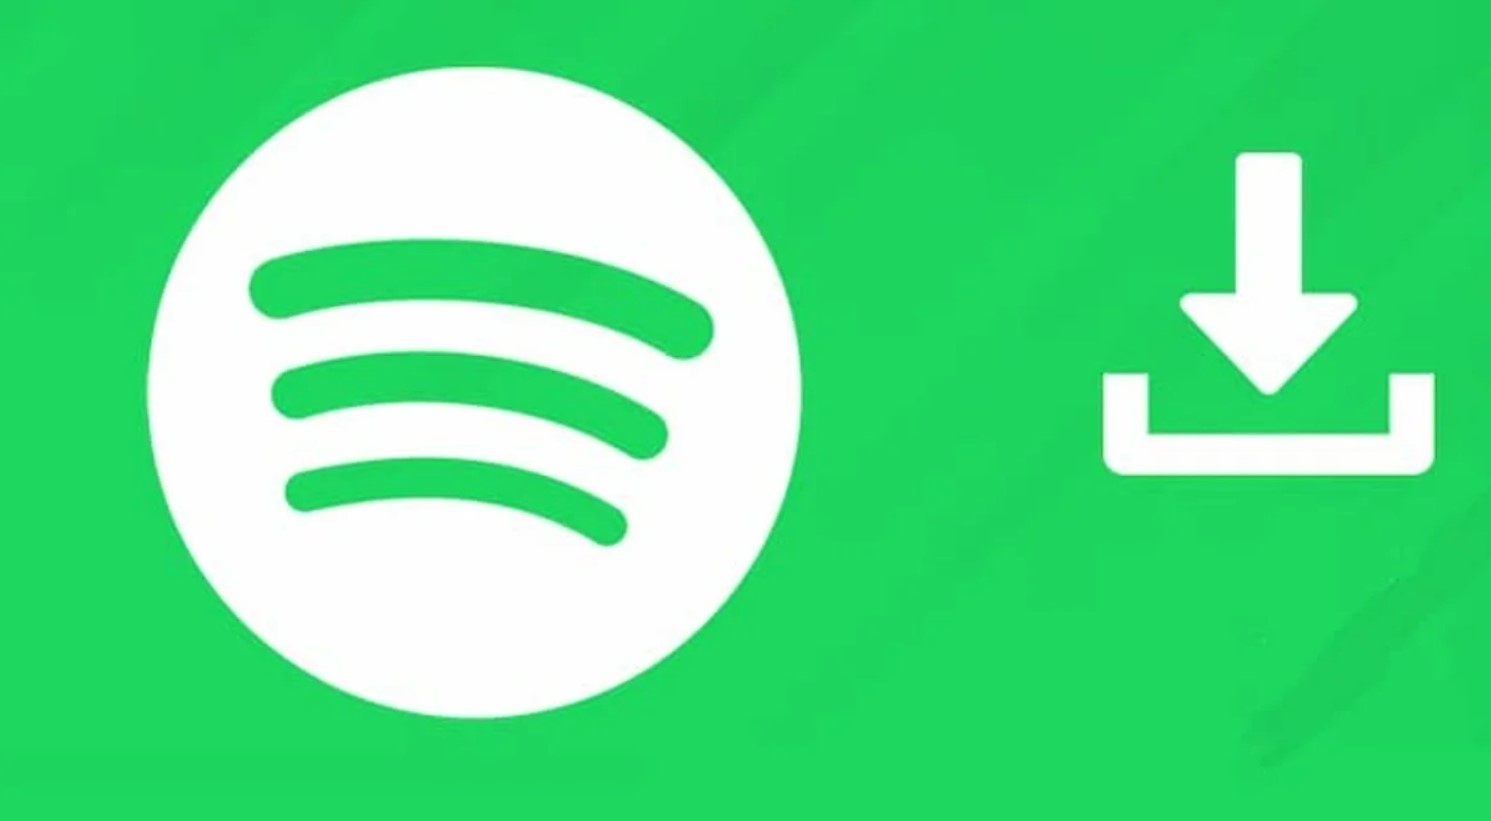 Dónde puedes encontrar la música que has descargado de Spotify